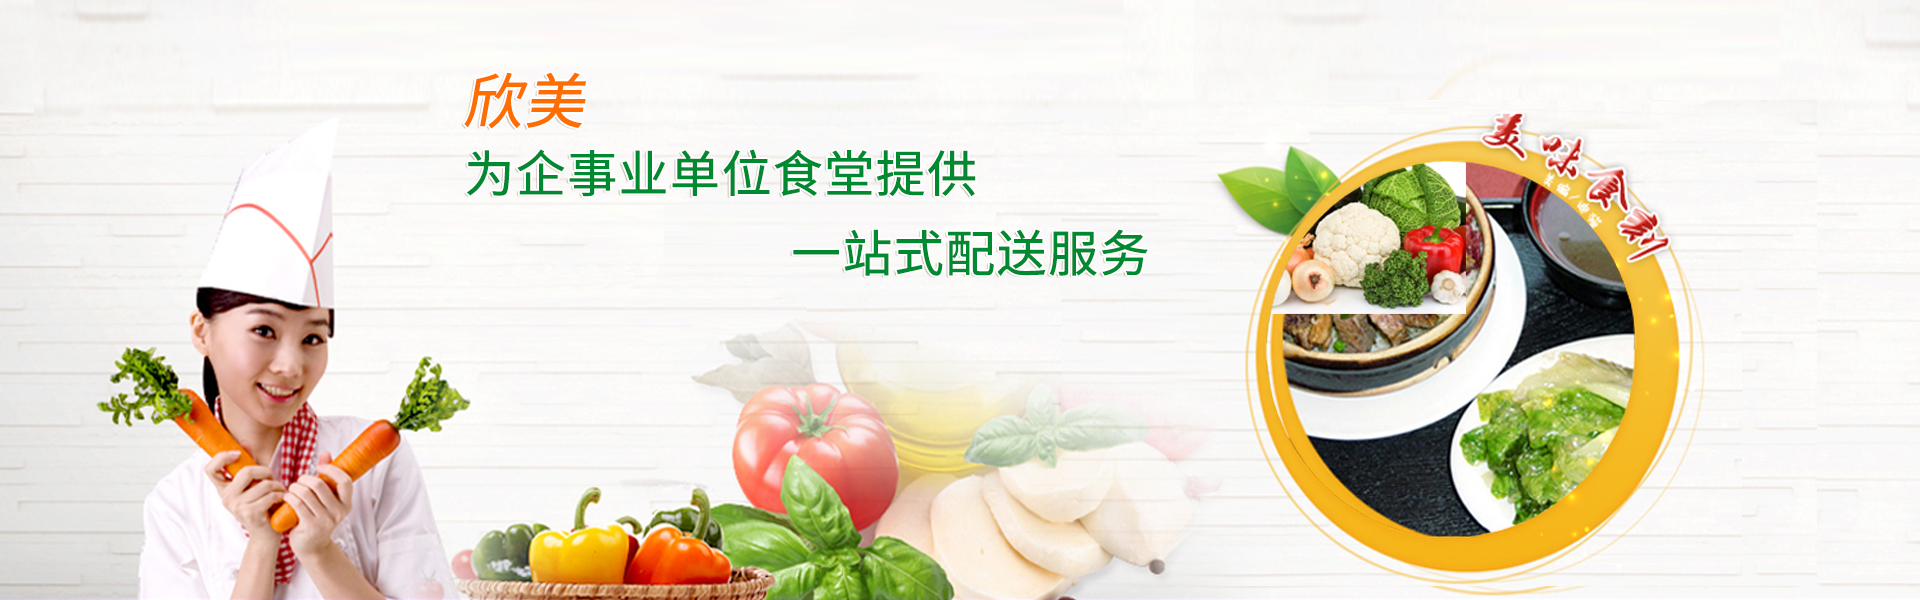 欣美农副产品配送把新鲜健康的蔬菜送到千家万户